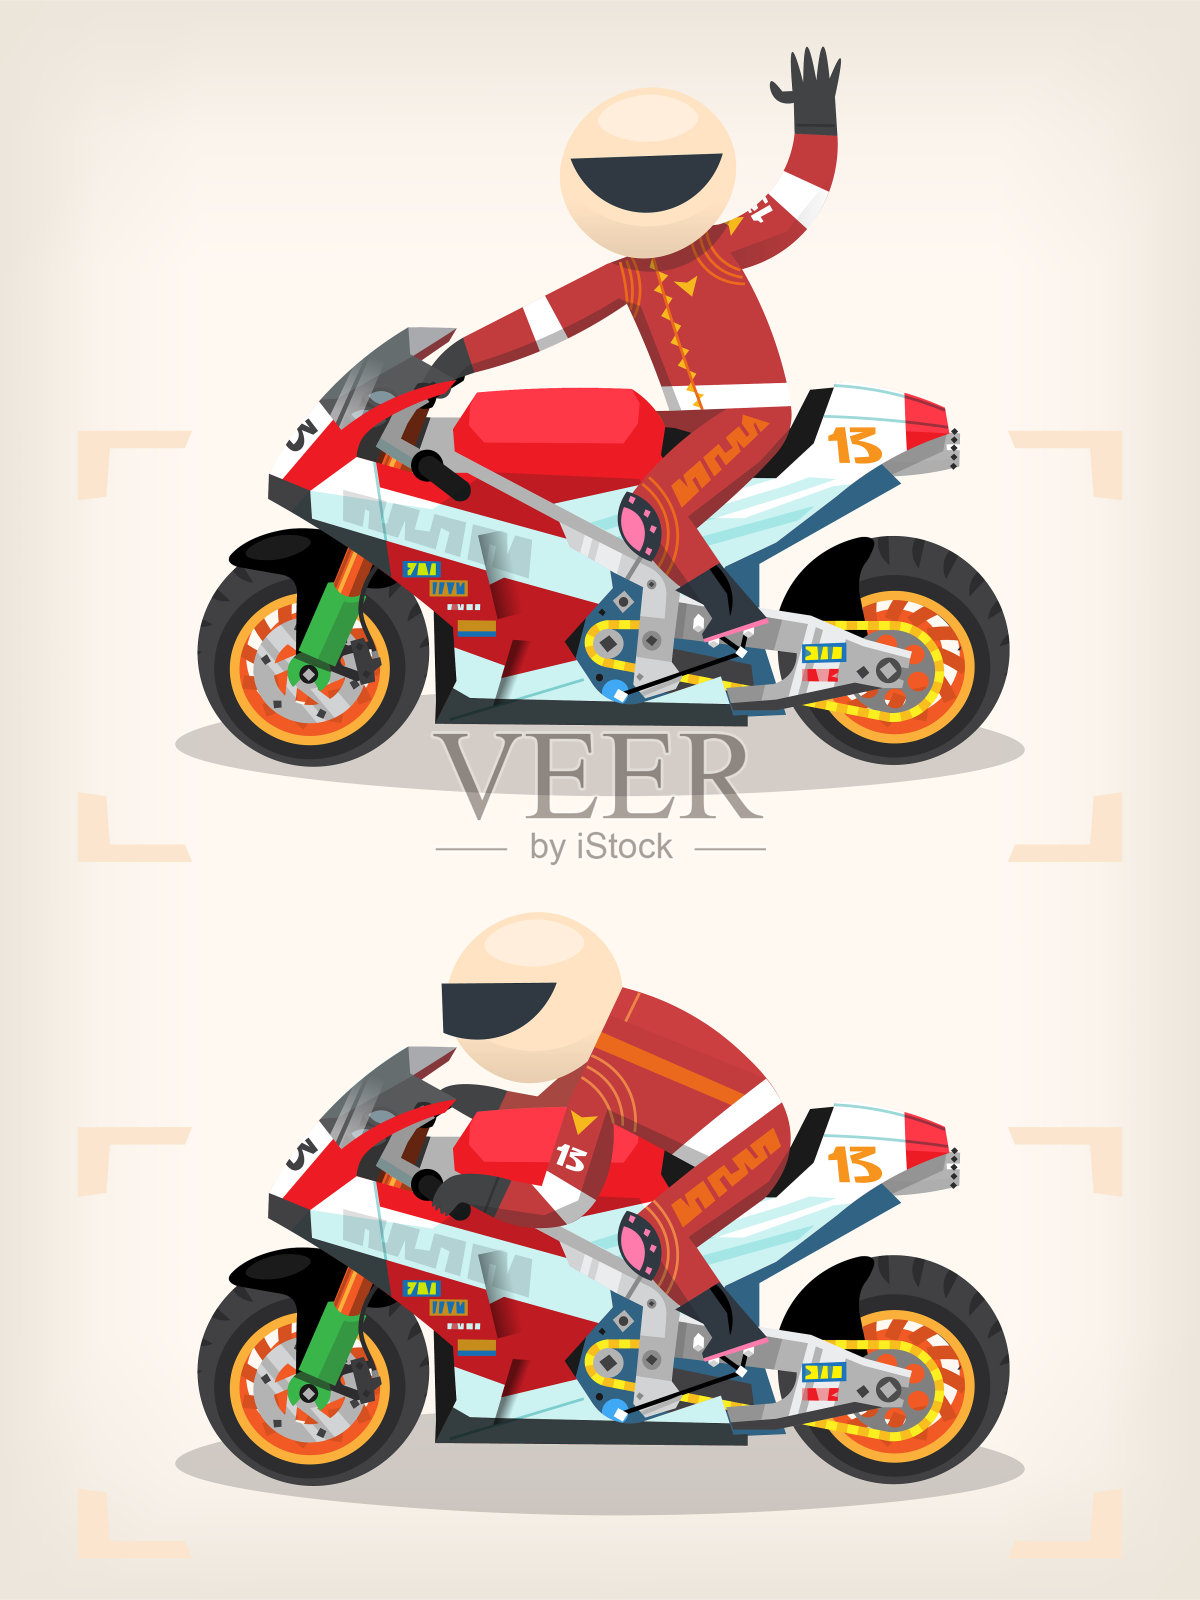 红色的摩托车手骑在摩托车上向人群挥手致意。设计元素图片